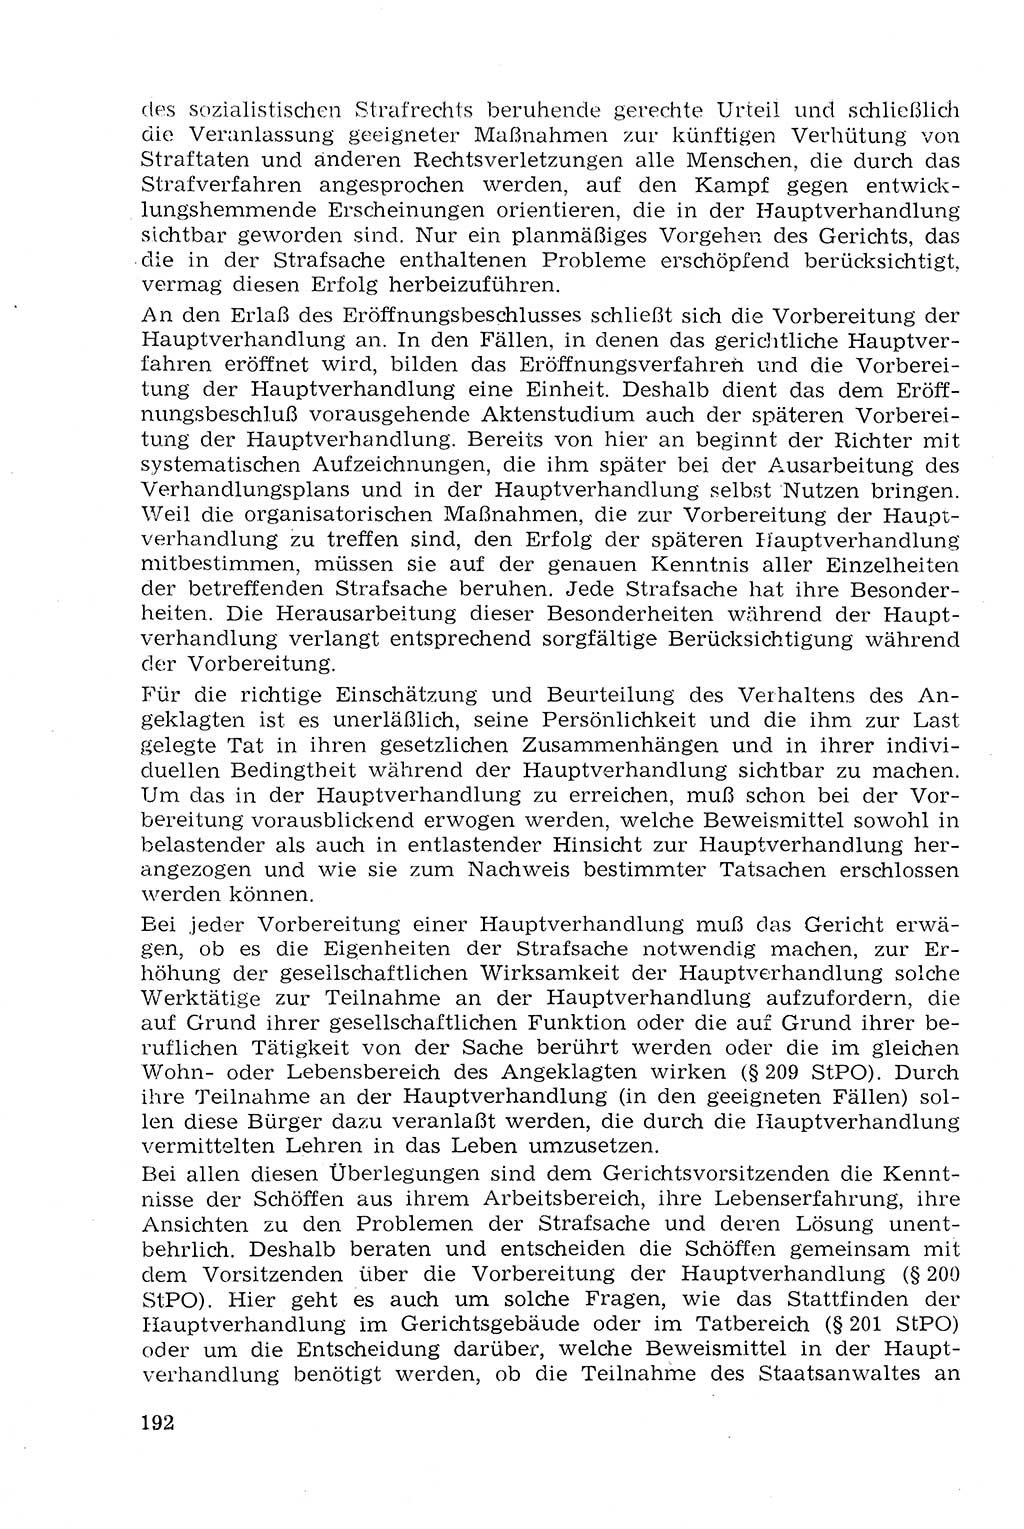 Strafprozeßrecht der DDR (Deutsche Demokratische Republik), Lehrmaterial 1969, Seite 192 (Strafprozeßr. DDR Lehrmat. 1969, S. 192)